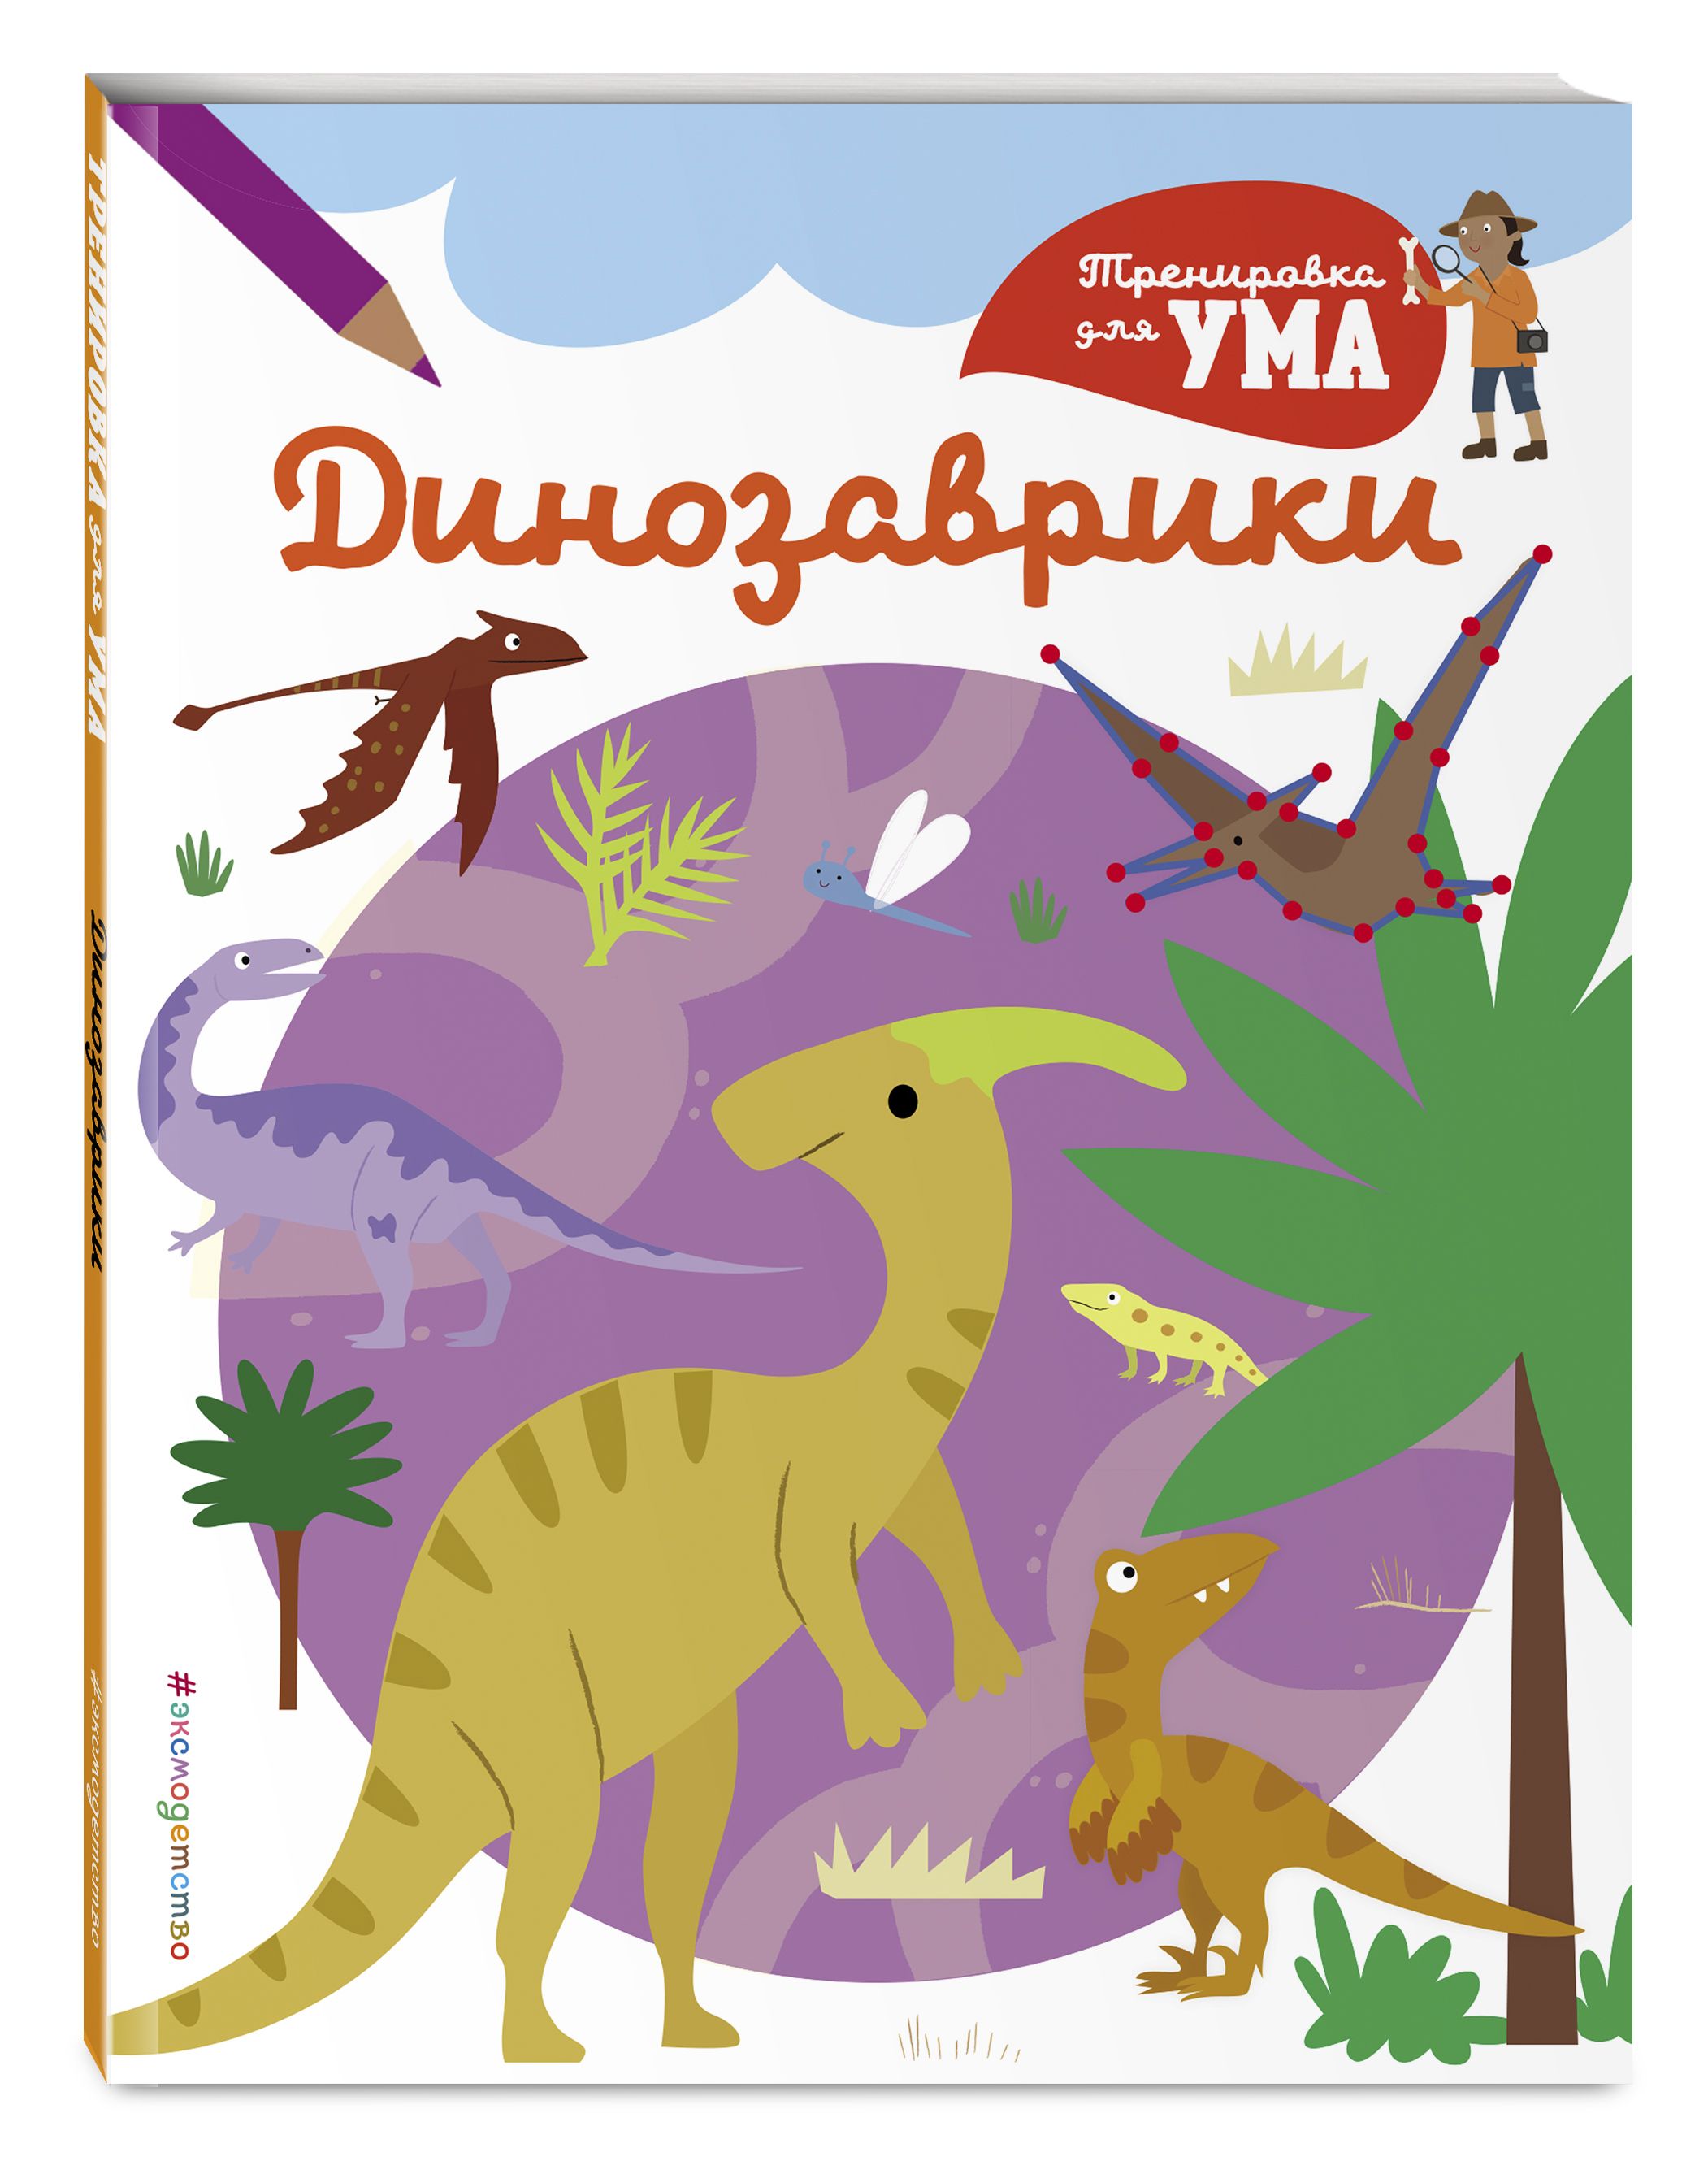 Книги про динозавров для детей 4-5 лет. Книжка про динозавров для детей. Путешествие ДИНОЗАВРИКОВ книжки. Книга про динозавров для детей. Динозавры книга купить